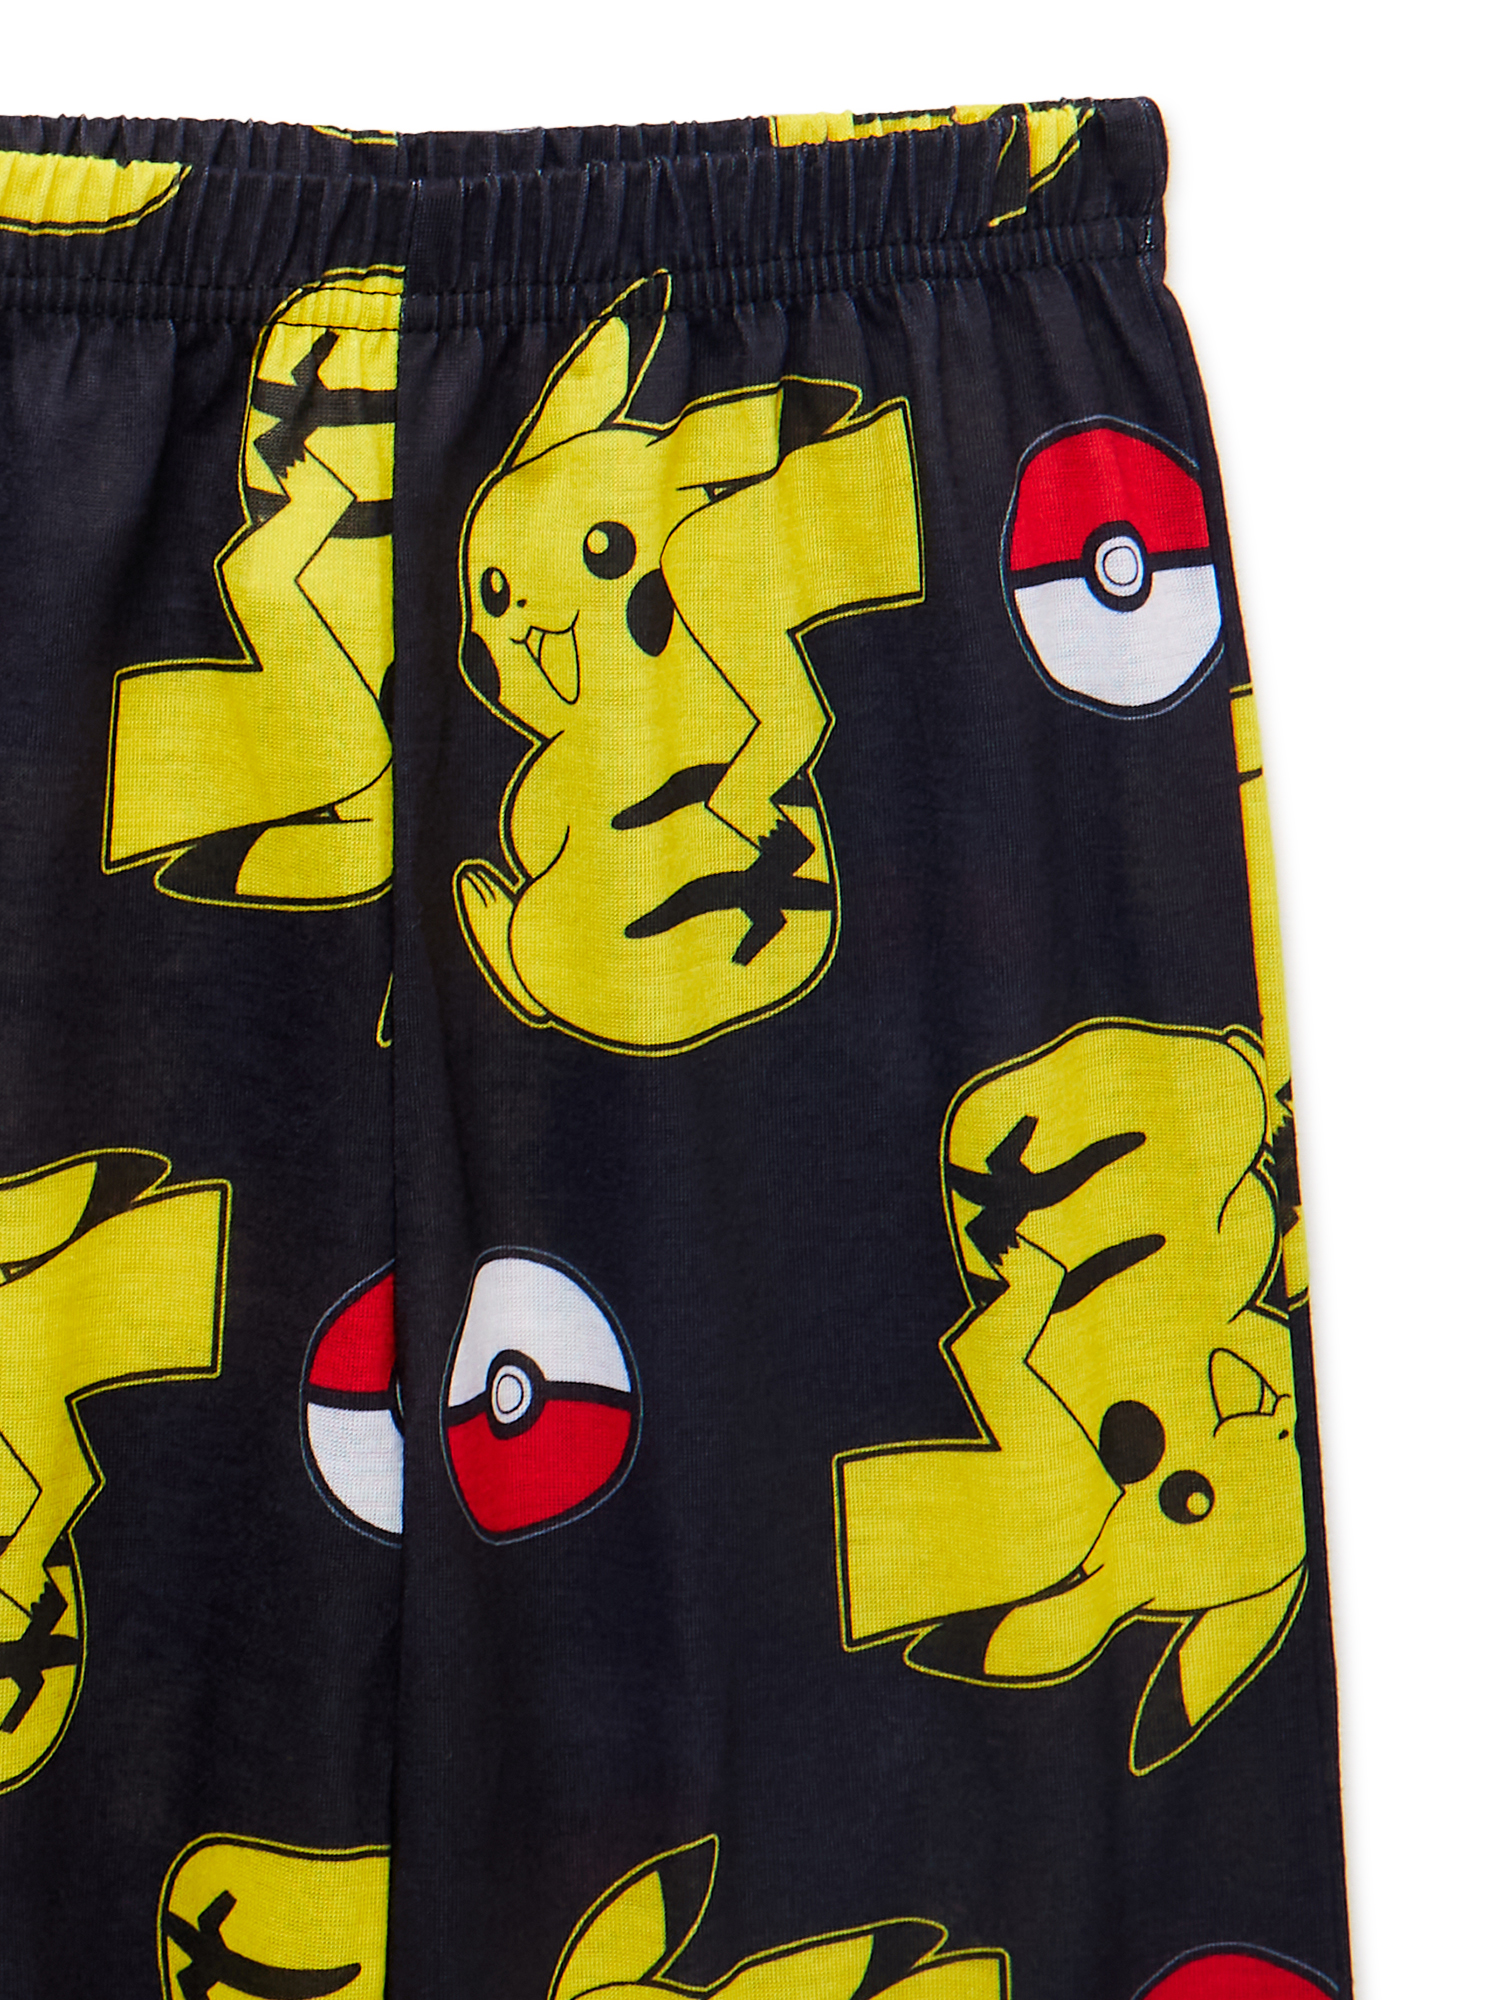 Pokemon Boys Short Sleeve T-Shirt and Shorts Pajama Set, 2-Piece, Sizes 4-14 - image 2 of 3